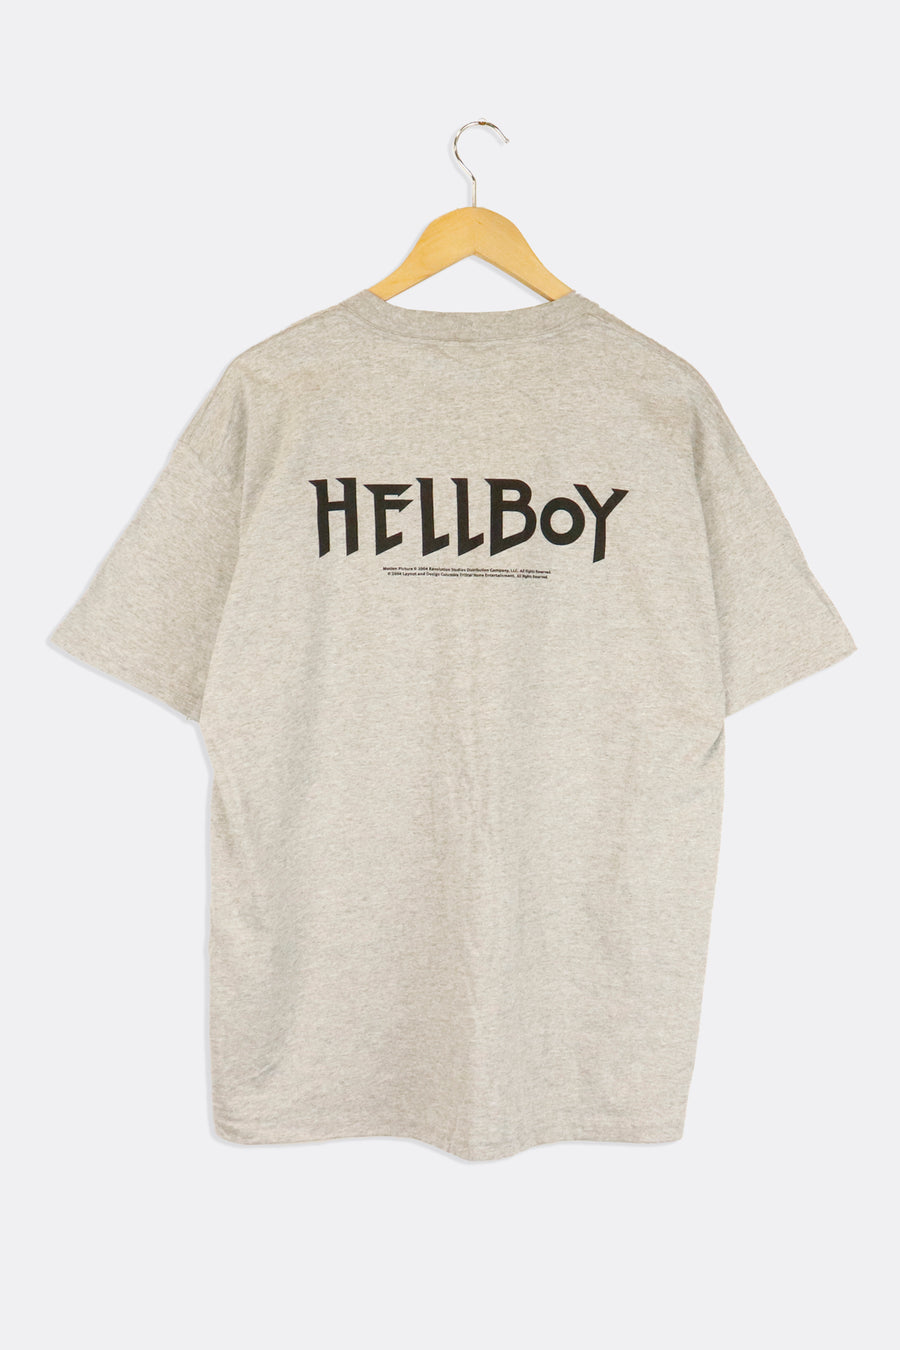 Vintage 2004 Hellboy Movie Promo Vinyl T Shirt Sz L